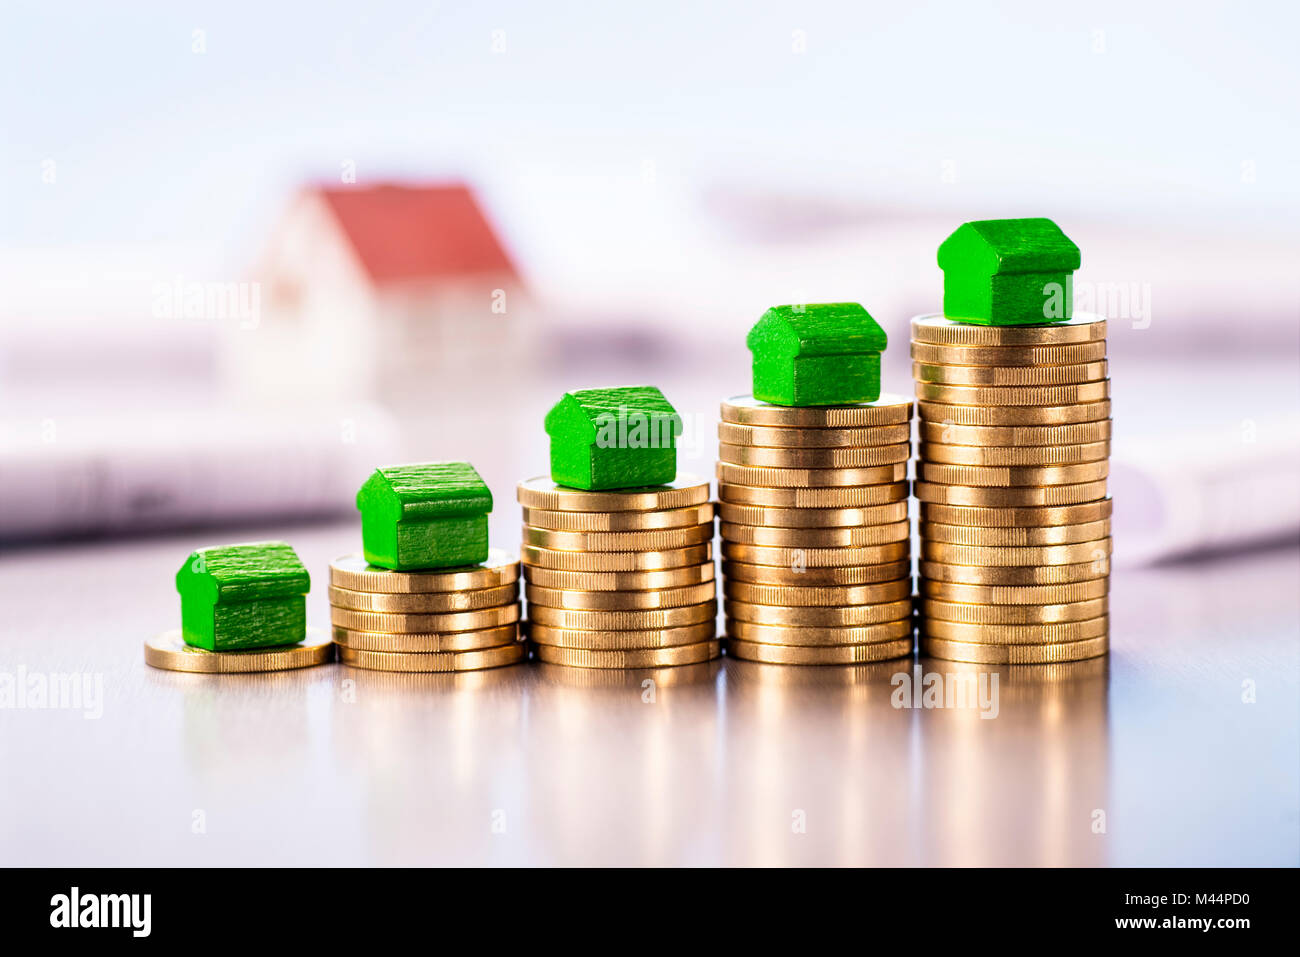 Les petites maisons vertes debout sur des piles de pièces de monnaie avec les bleus et modèle architectural dans l'arrière-plan. Banque D'Images